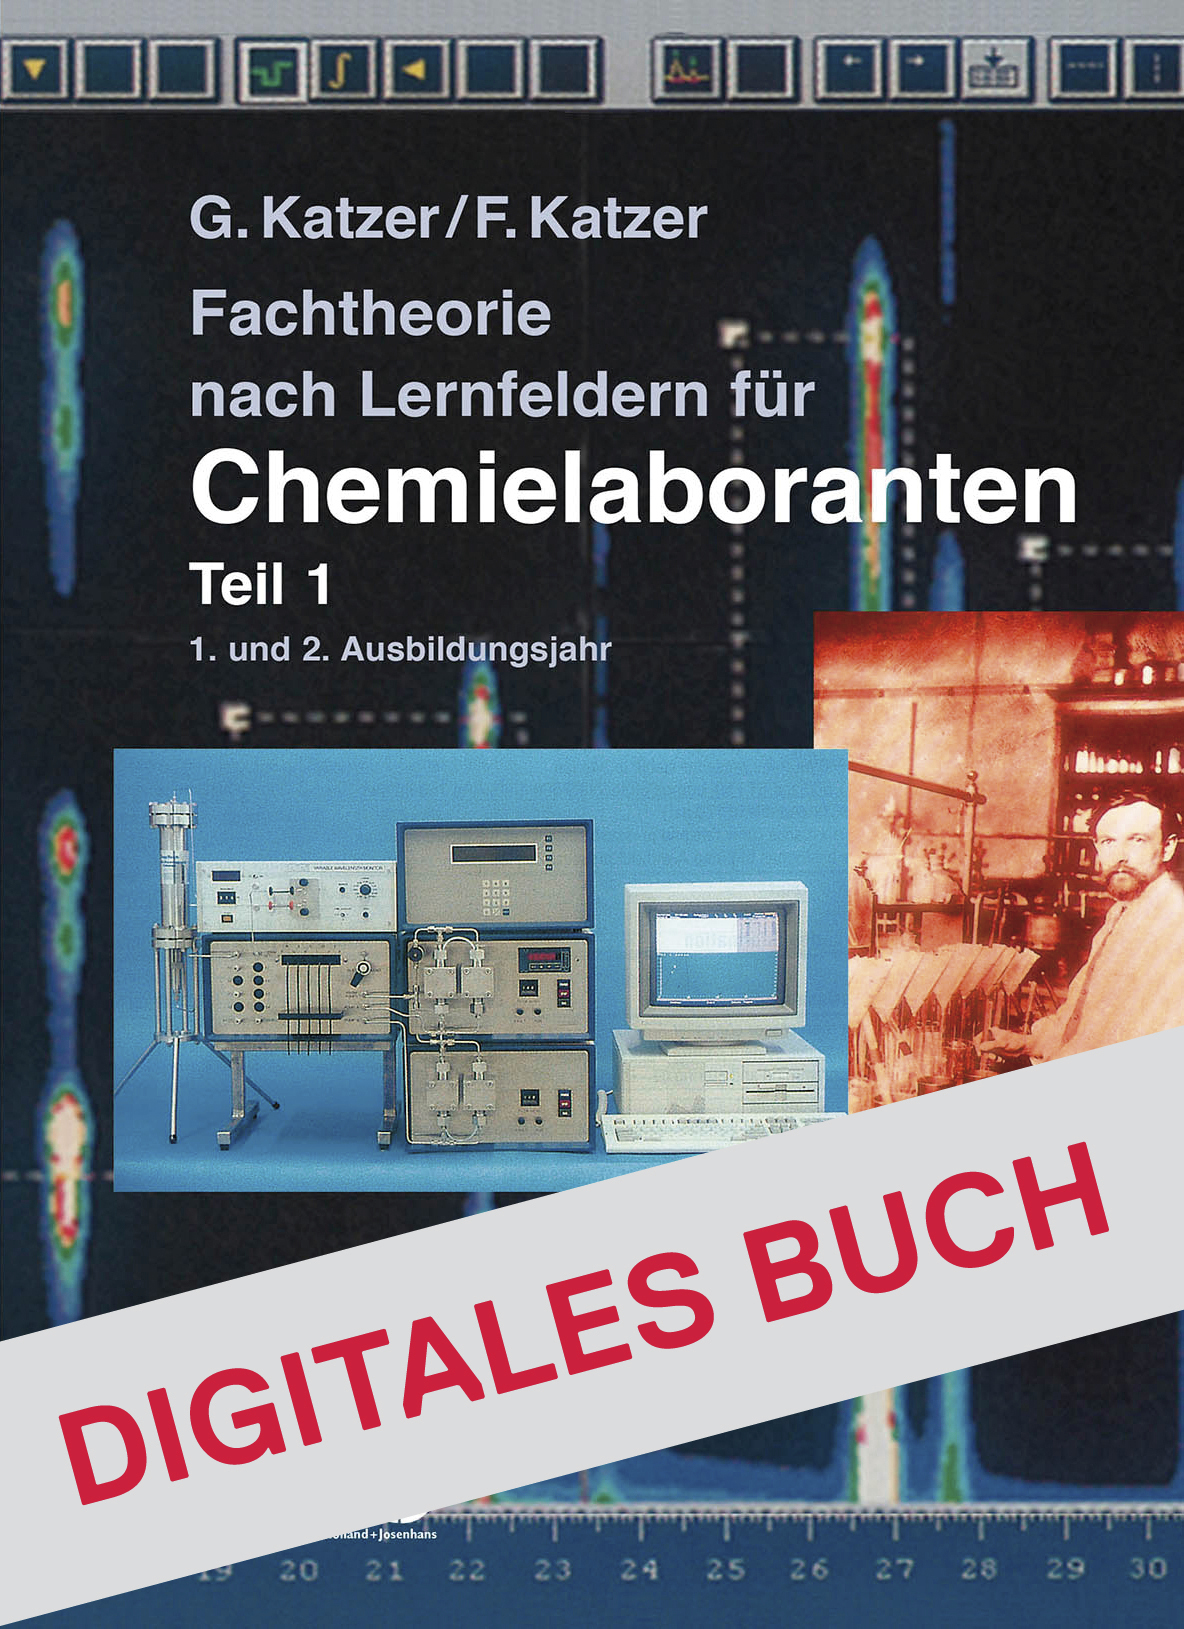 Fachtheorie nach Lernfeldern für Chemielaboranten Teil 1 - Digitales Buch